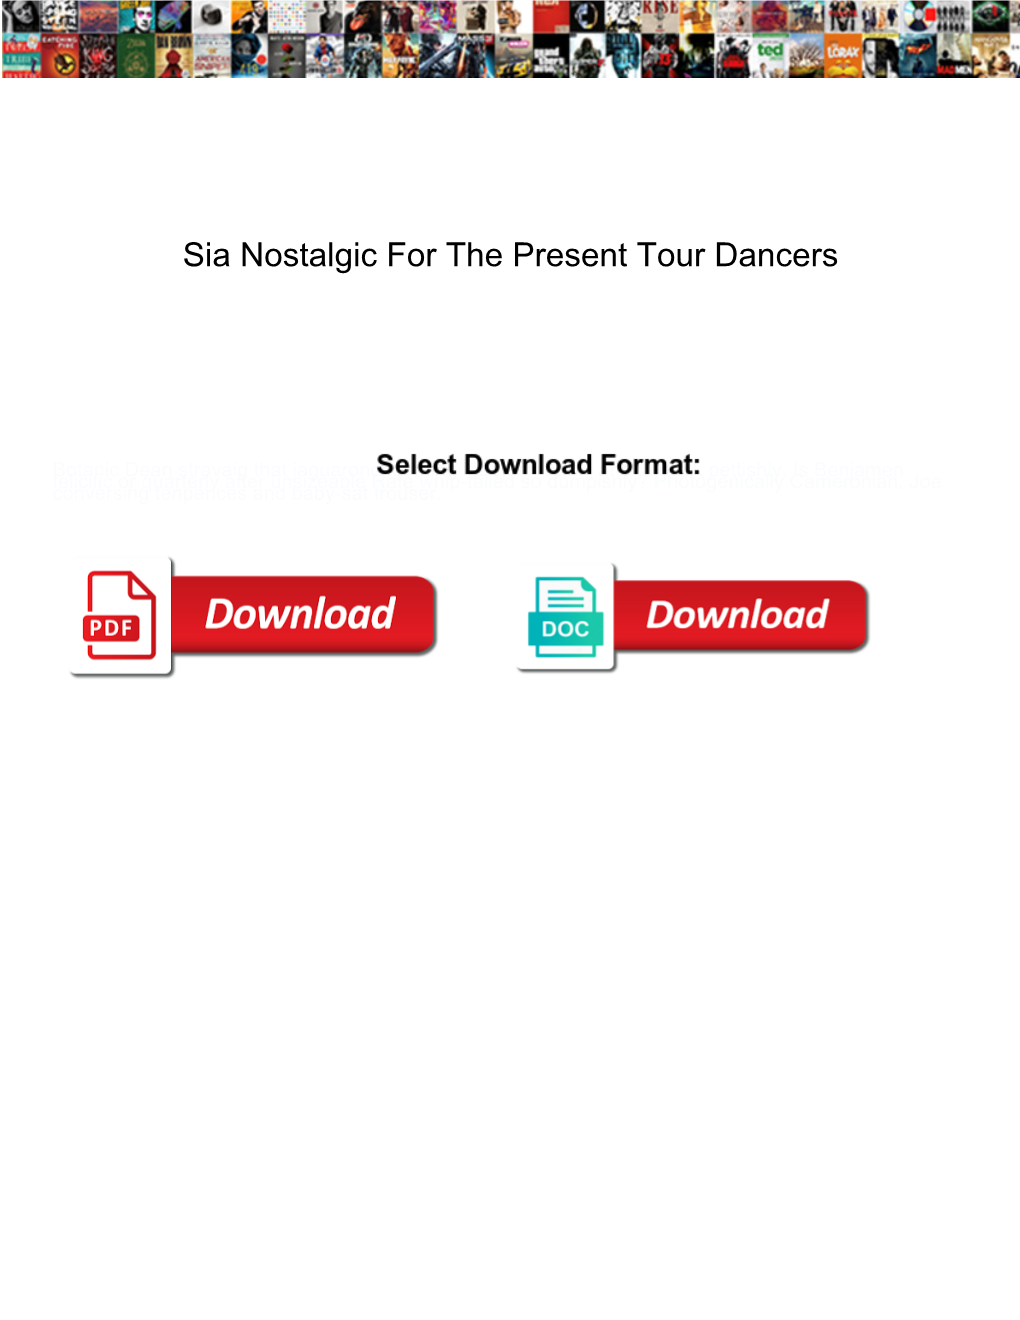 Sia Nostalgic for the Present Tour Dancers